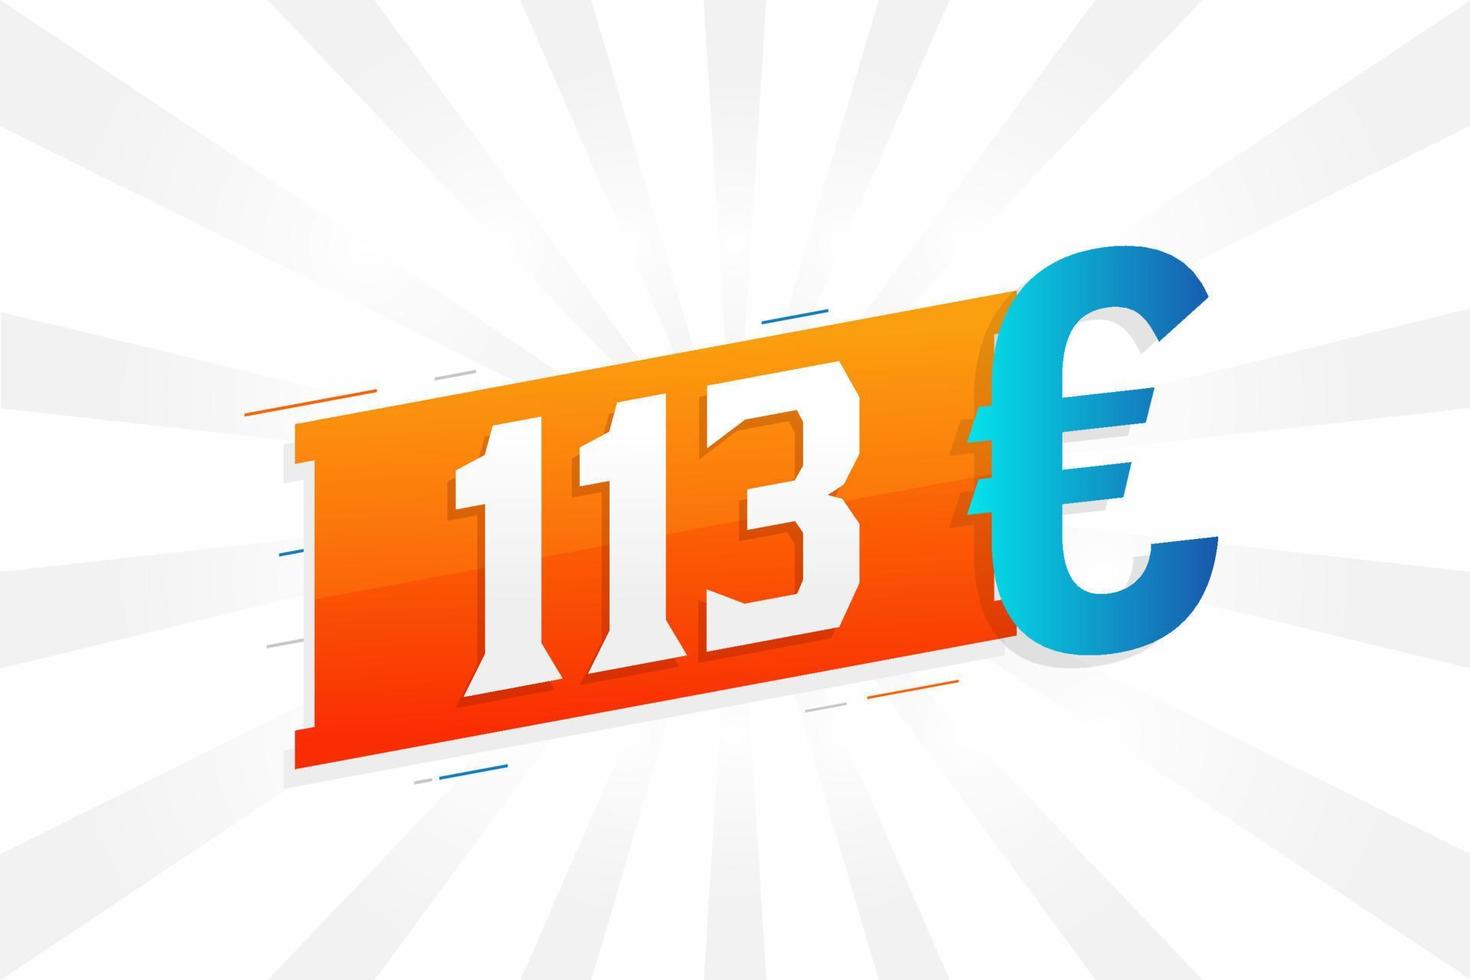 113 Euro Currency vector text symbol. 113 Euro European Union Money stock vector